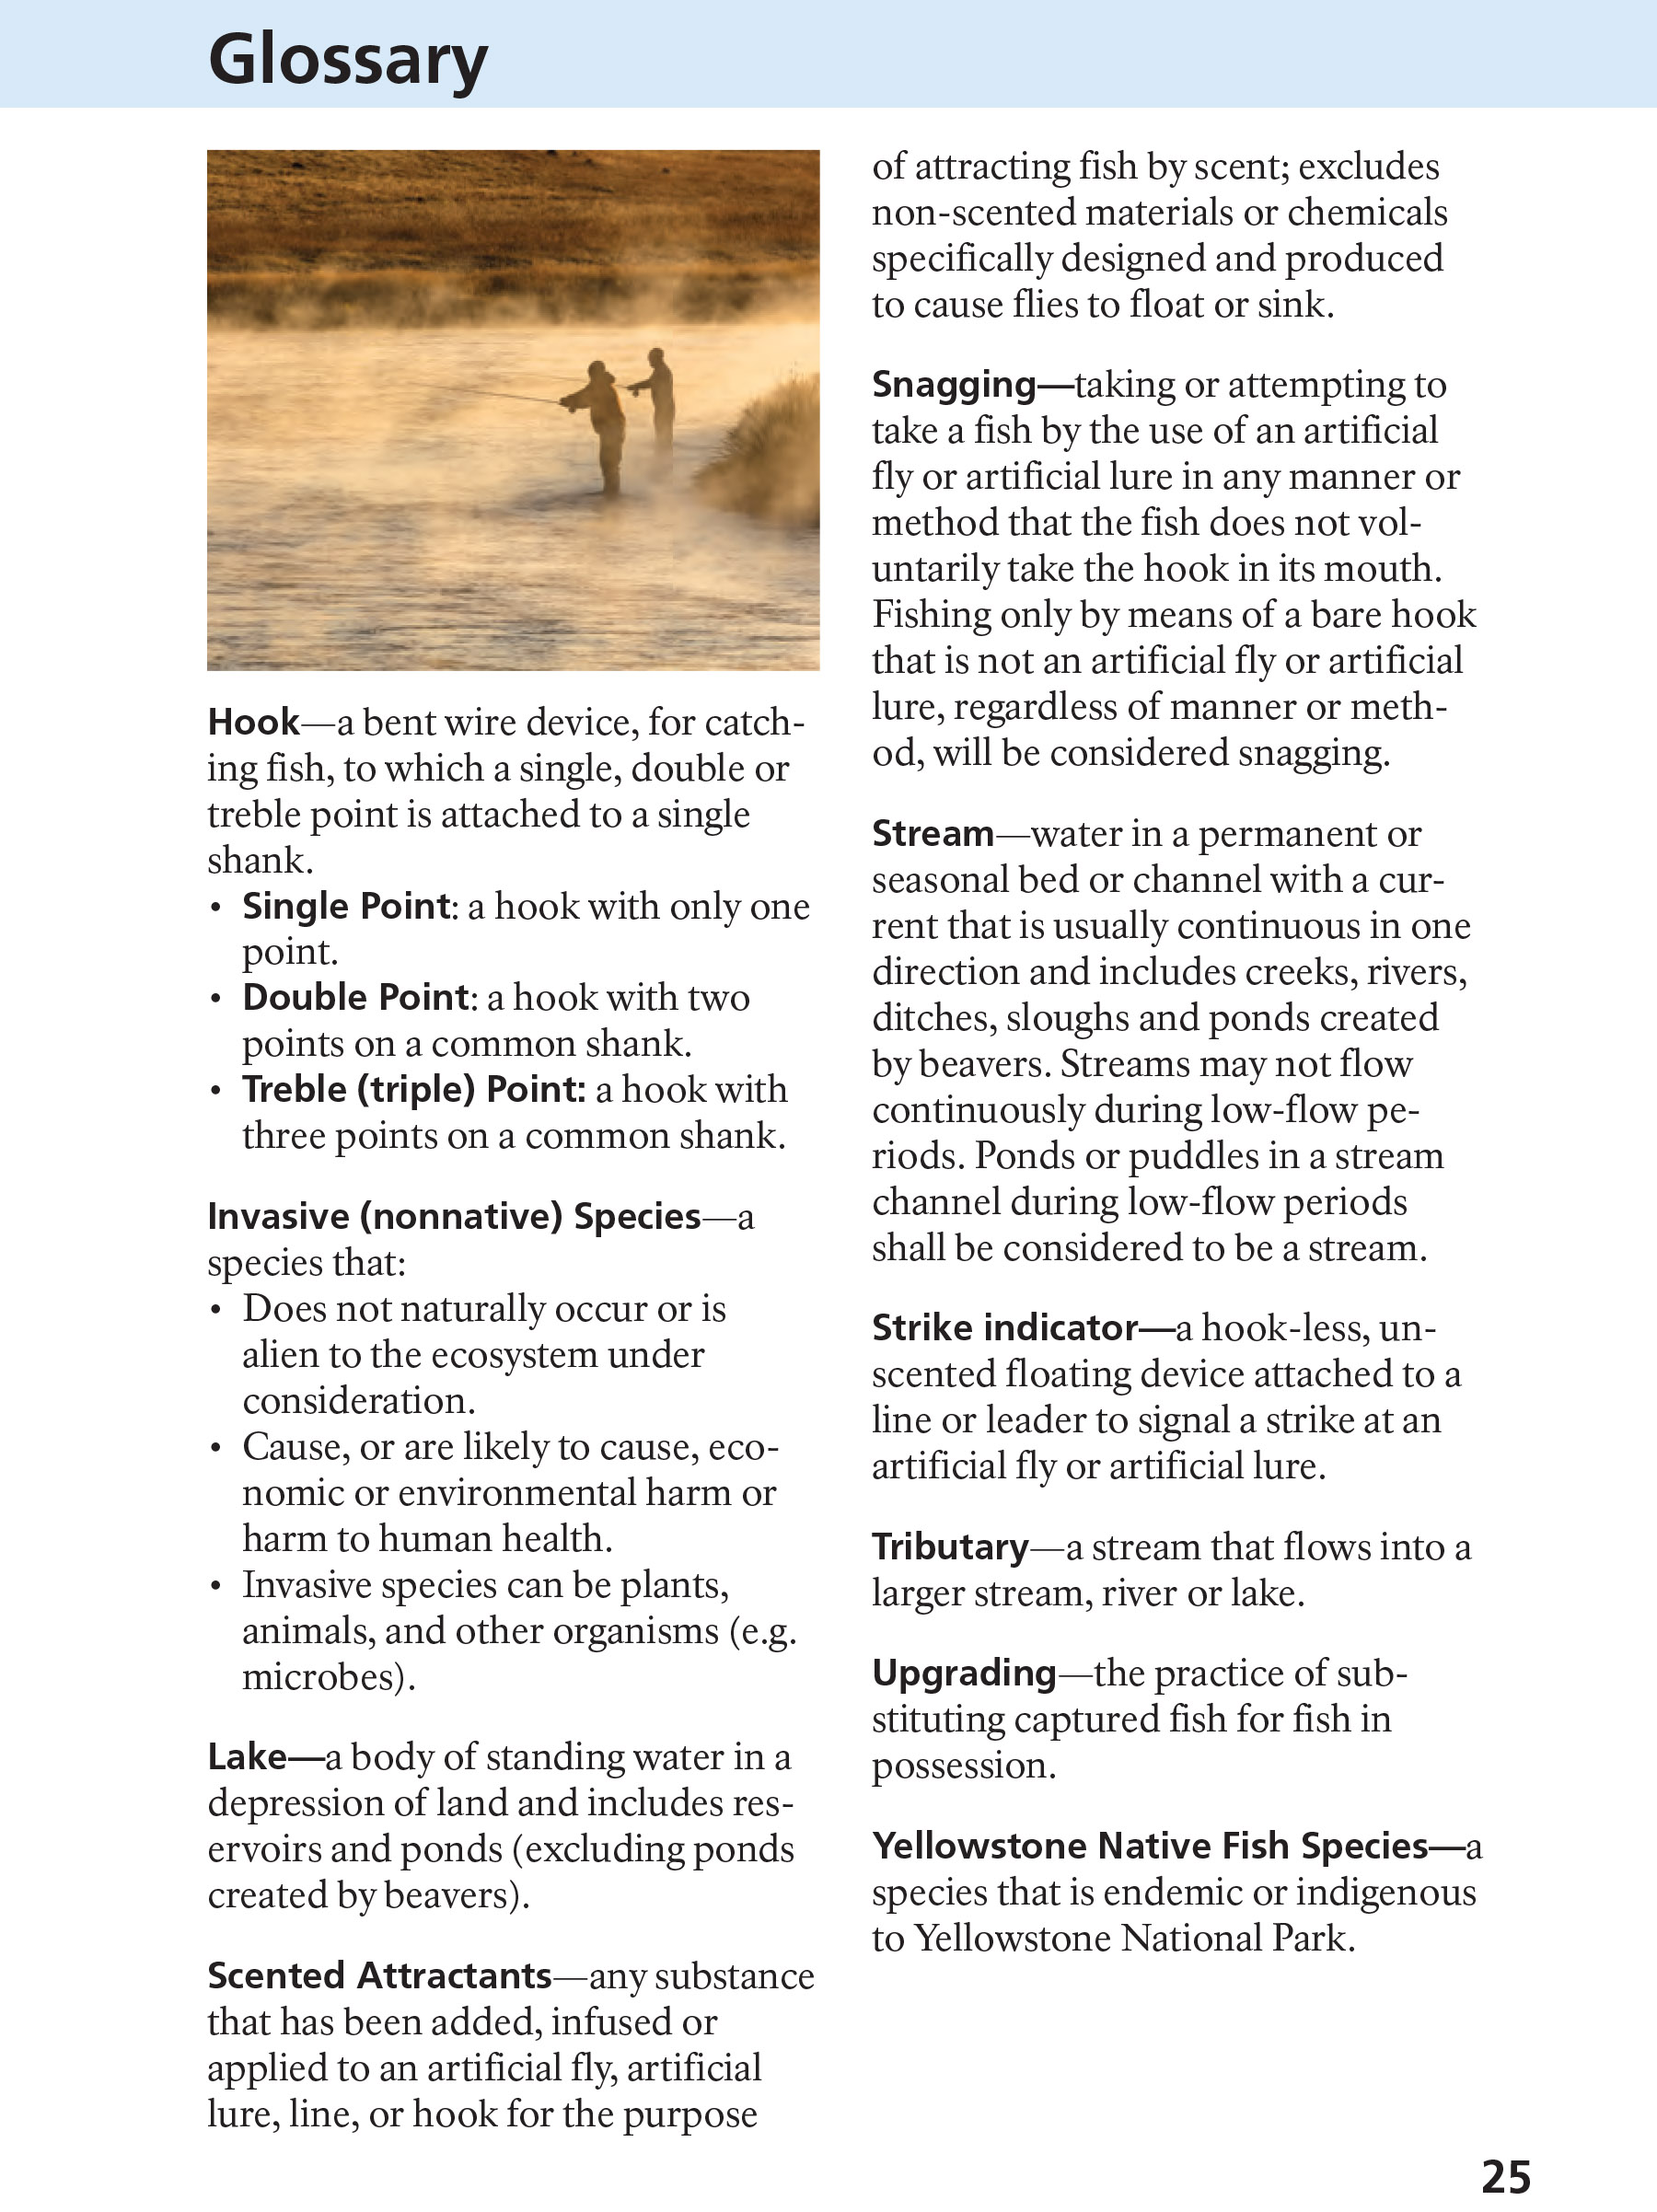 Yellowstone Fishing Regulations Page 23 - NPS Image